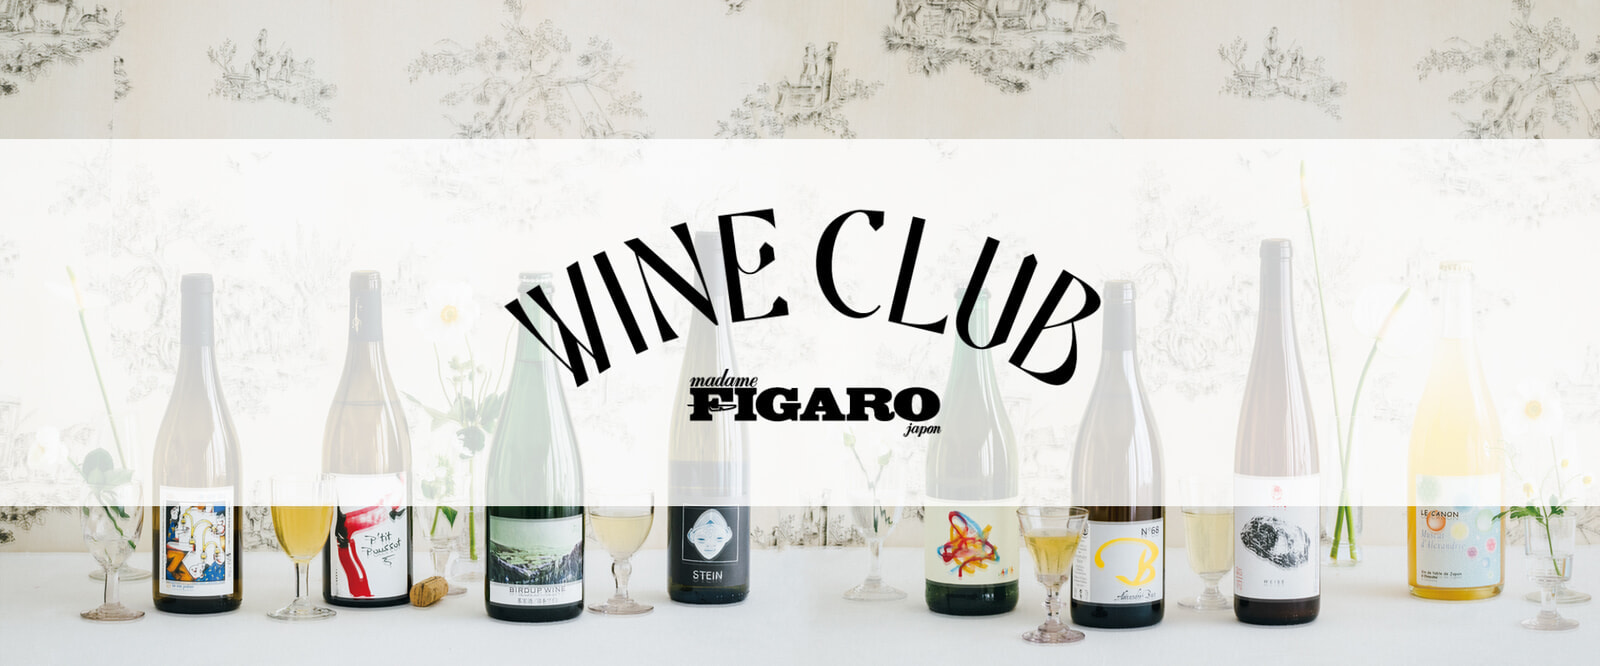 figaro_wine0005.jpg